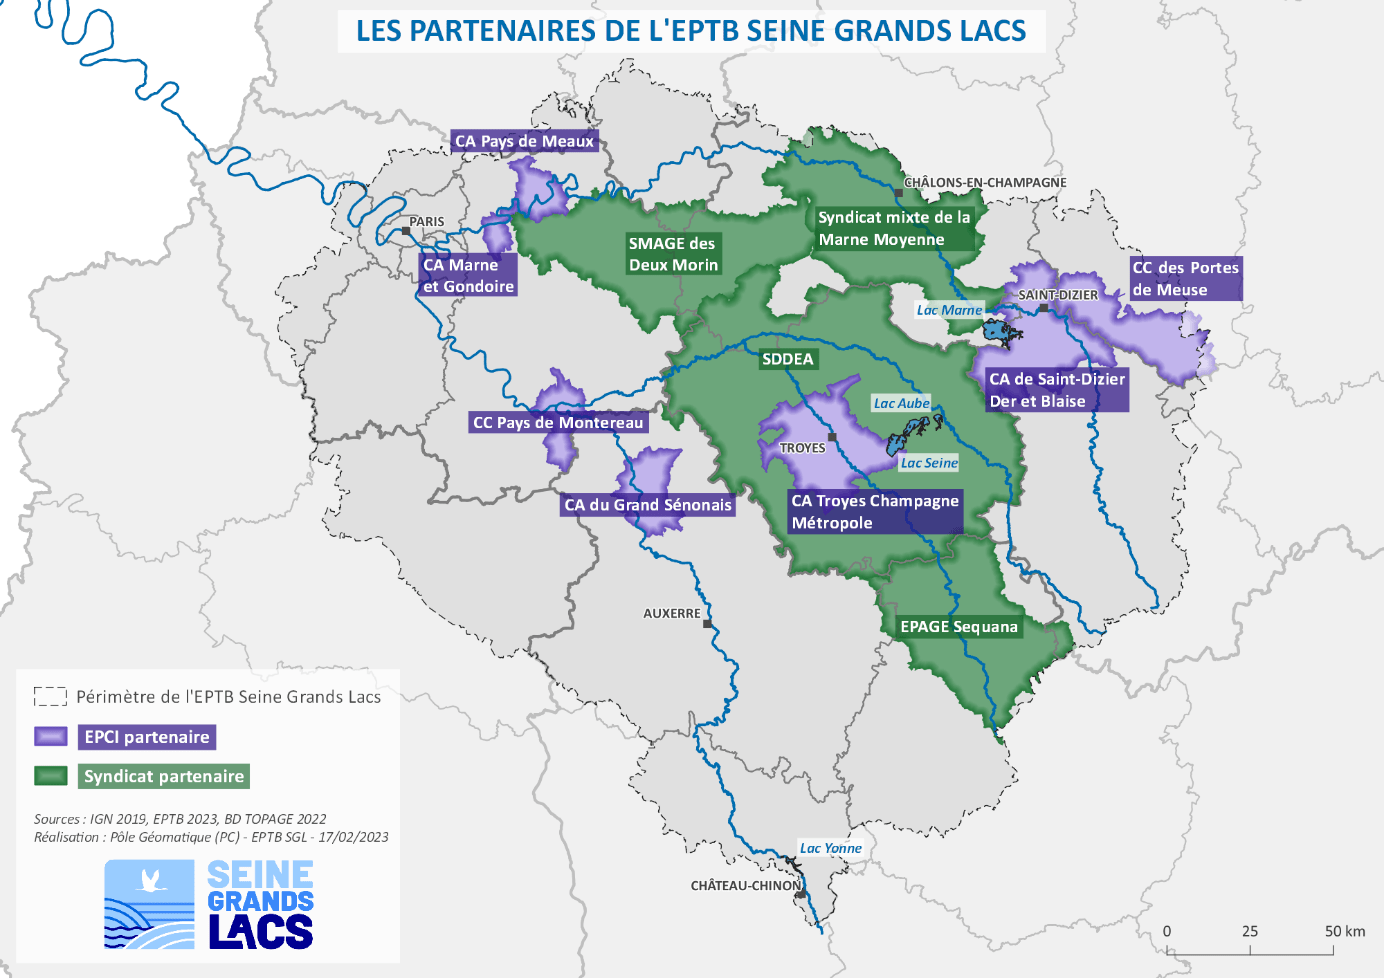 Cellule d'accompagnement de Seine Grands Lacs - Partenaires